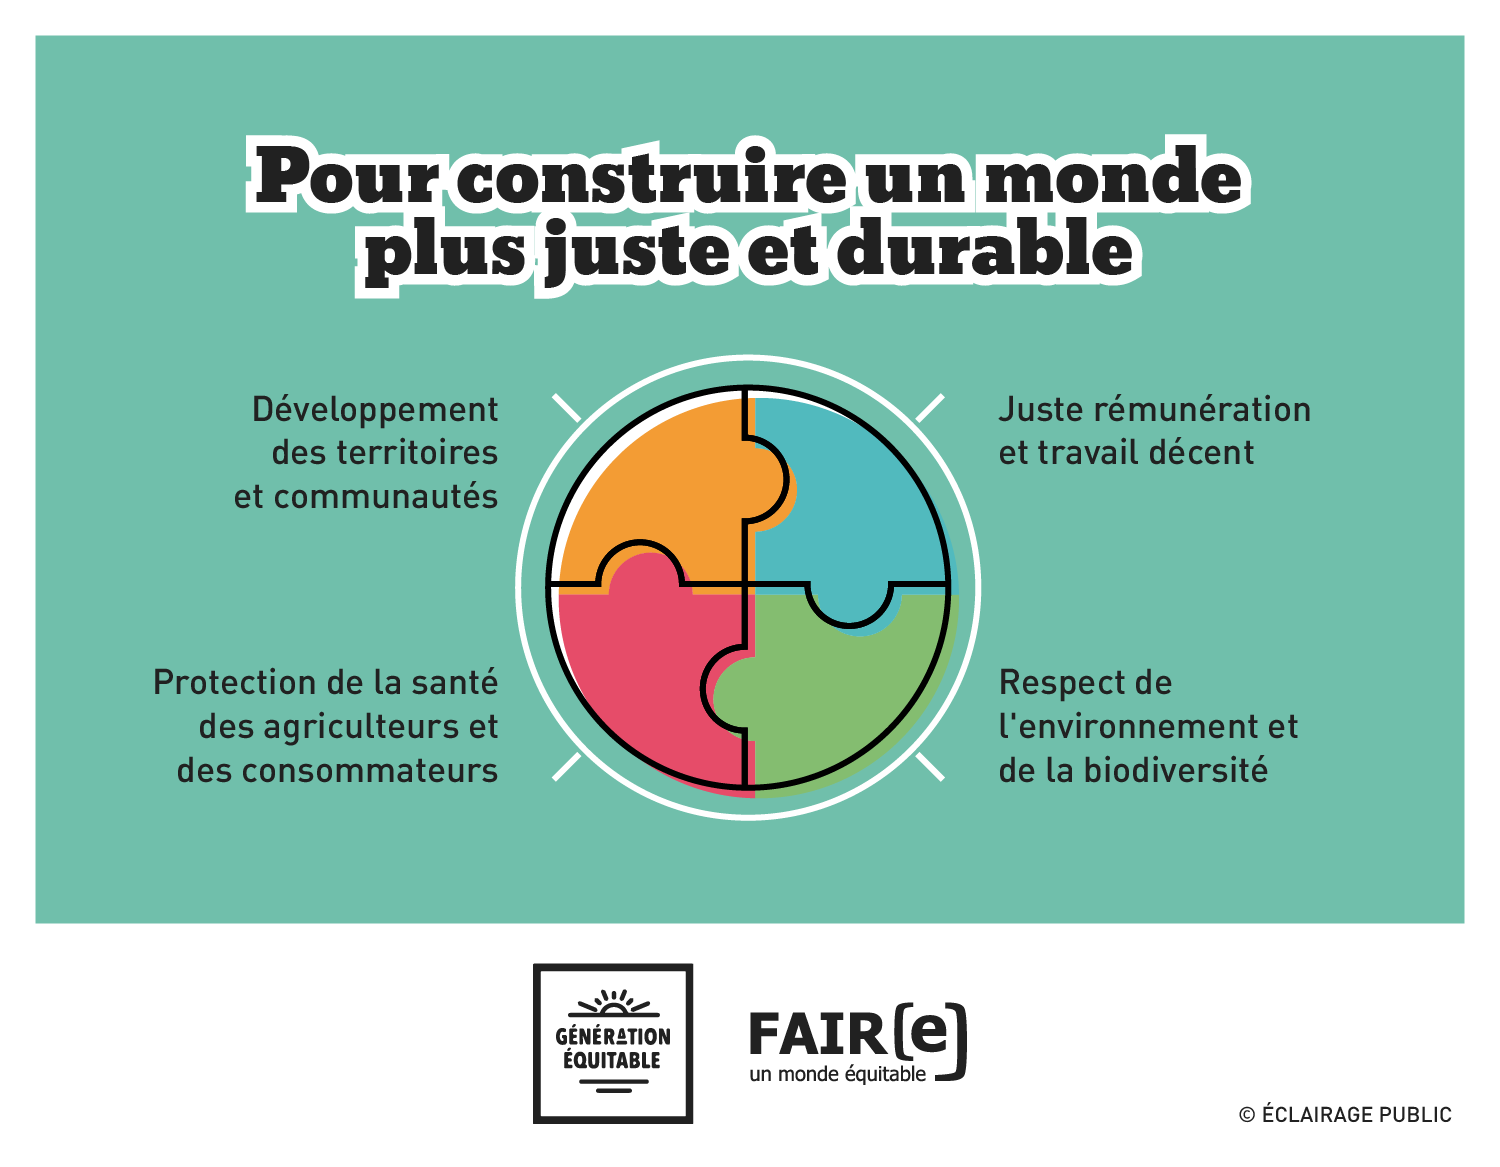 FAIRE-Commerce-equitable-Pour-construire-un-monde-plus-juste-et-durable-Infographie-ECLAIRAGE-PUBLIC-1500